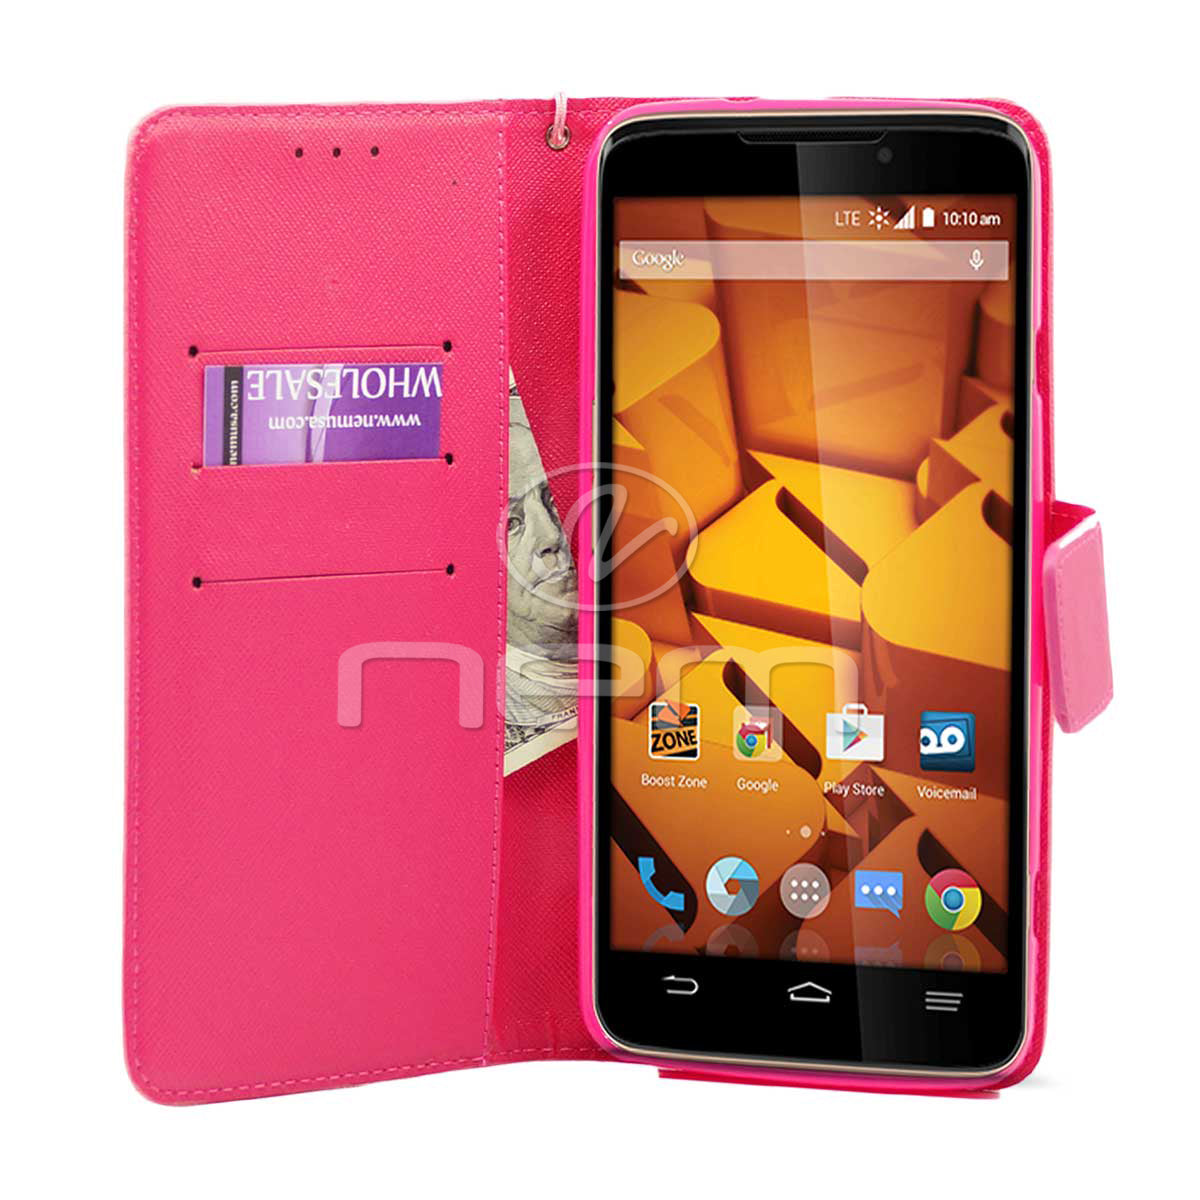 ZTE Max Plus N9520 WCFC09 Pink/Black